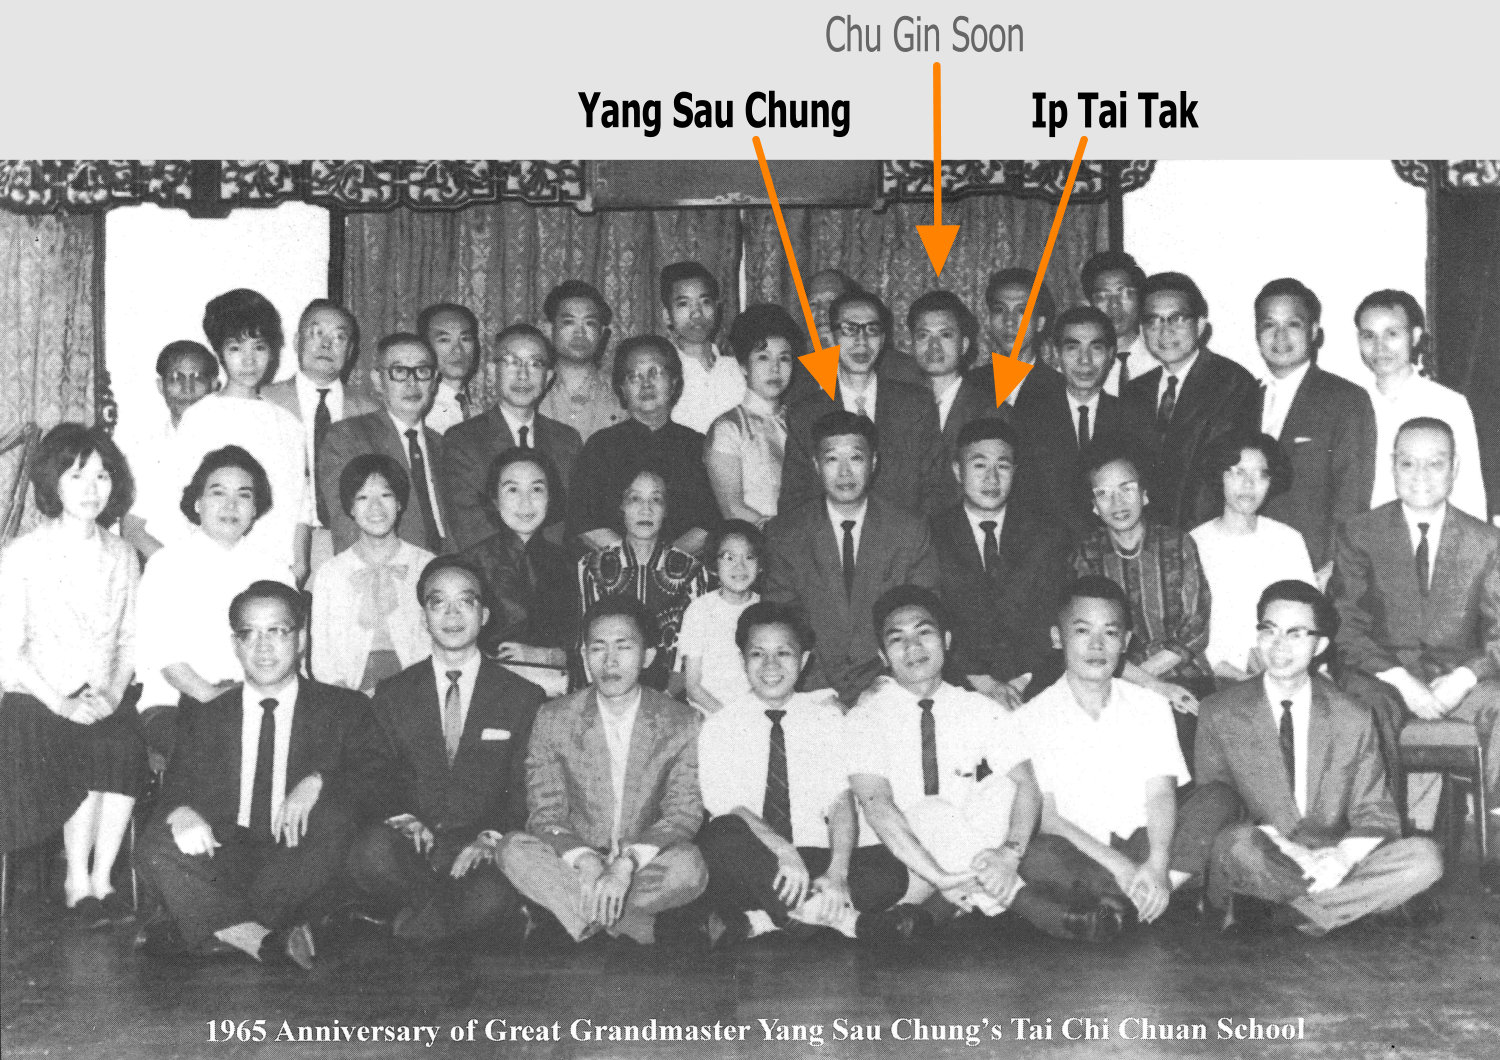 1965, anniversaire de Yang Sau Chung. Ip Tai Tak est assis à la droite de Yang Sau Chung. Il occupe la place traditionnellement réservée au fils. Cela démontre l'importance du statut de Ip Tai Tak aux yeux de Yang Sau Chung. Chu Gin Soon, pas encore disciple à l'époque, se trouve au dernier rang.